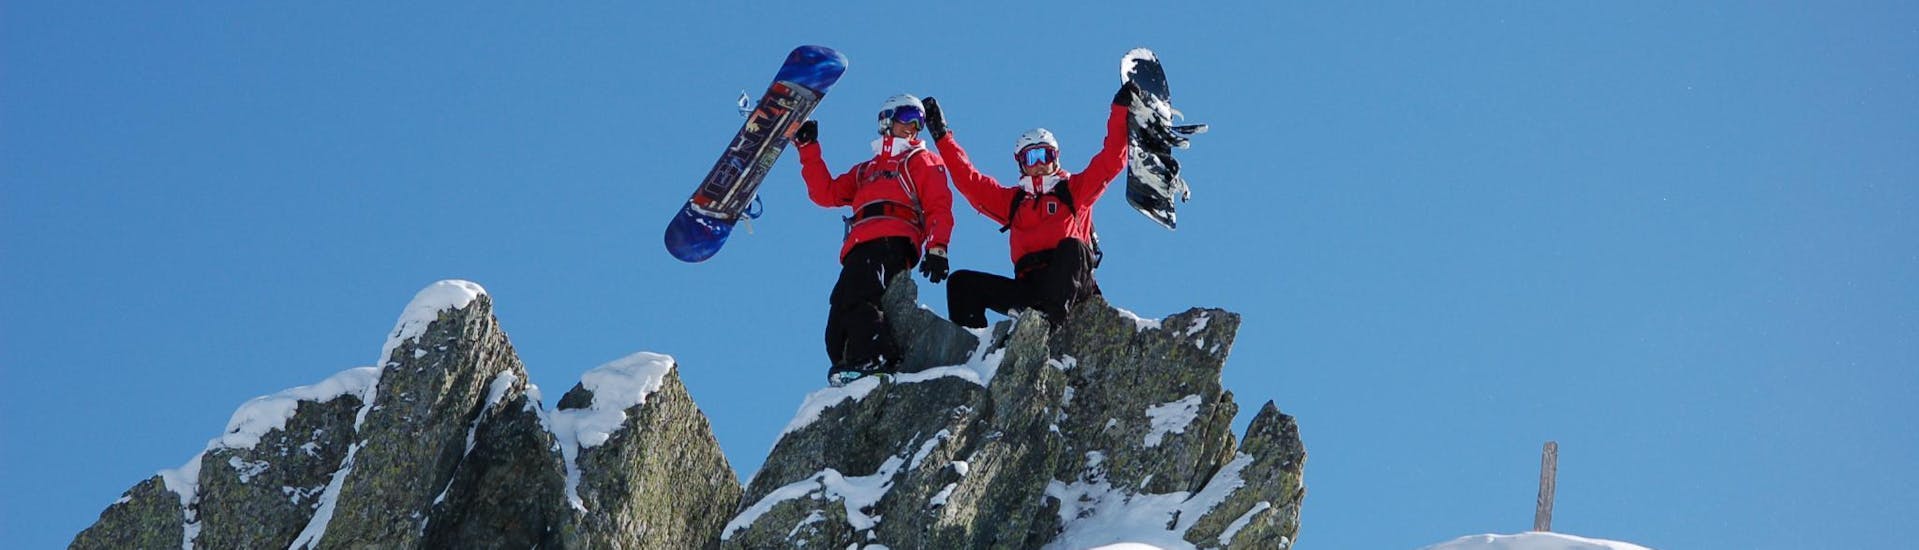 Im Snowboardkurs für Kinder & Erwachsene - Mit Erfahrung sind zwei Snowboardlehrer der Skischule Kitzbühel Rote Teufel auf einen Felsen geklettert und posen mit ihren Snowboards für ein Foto.